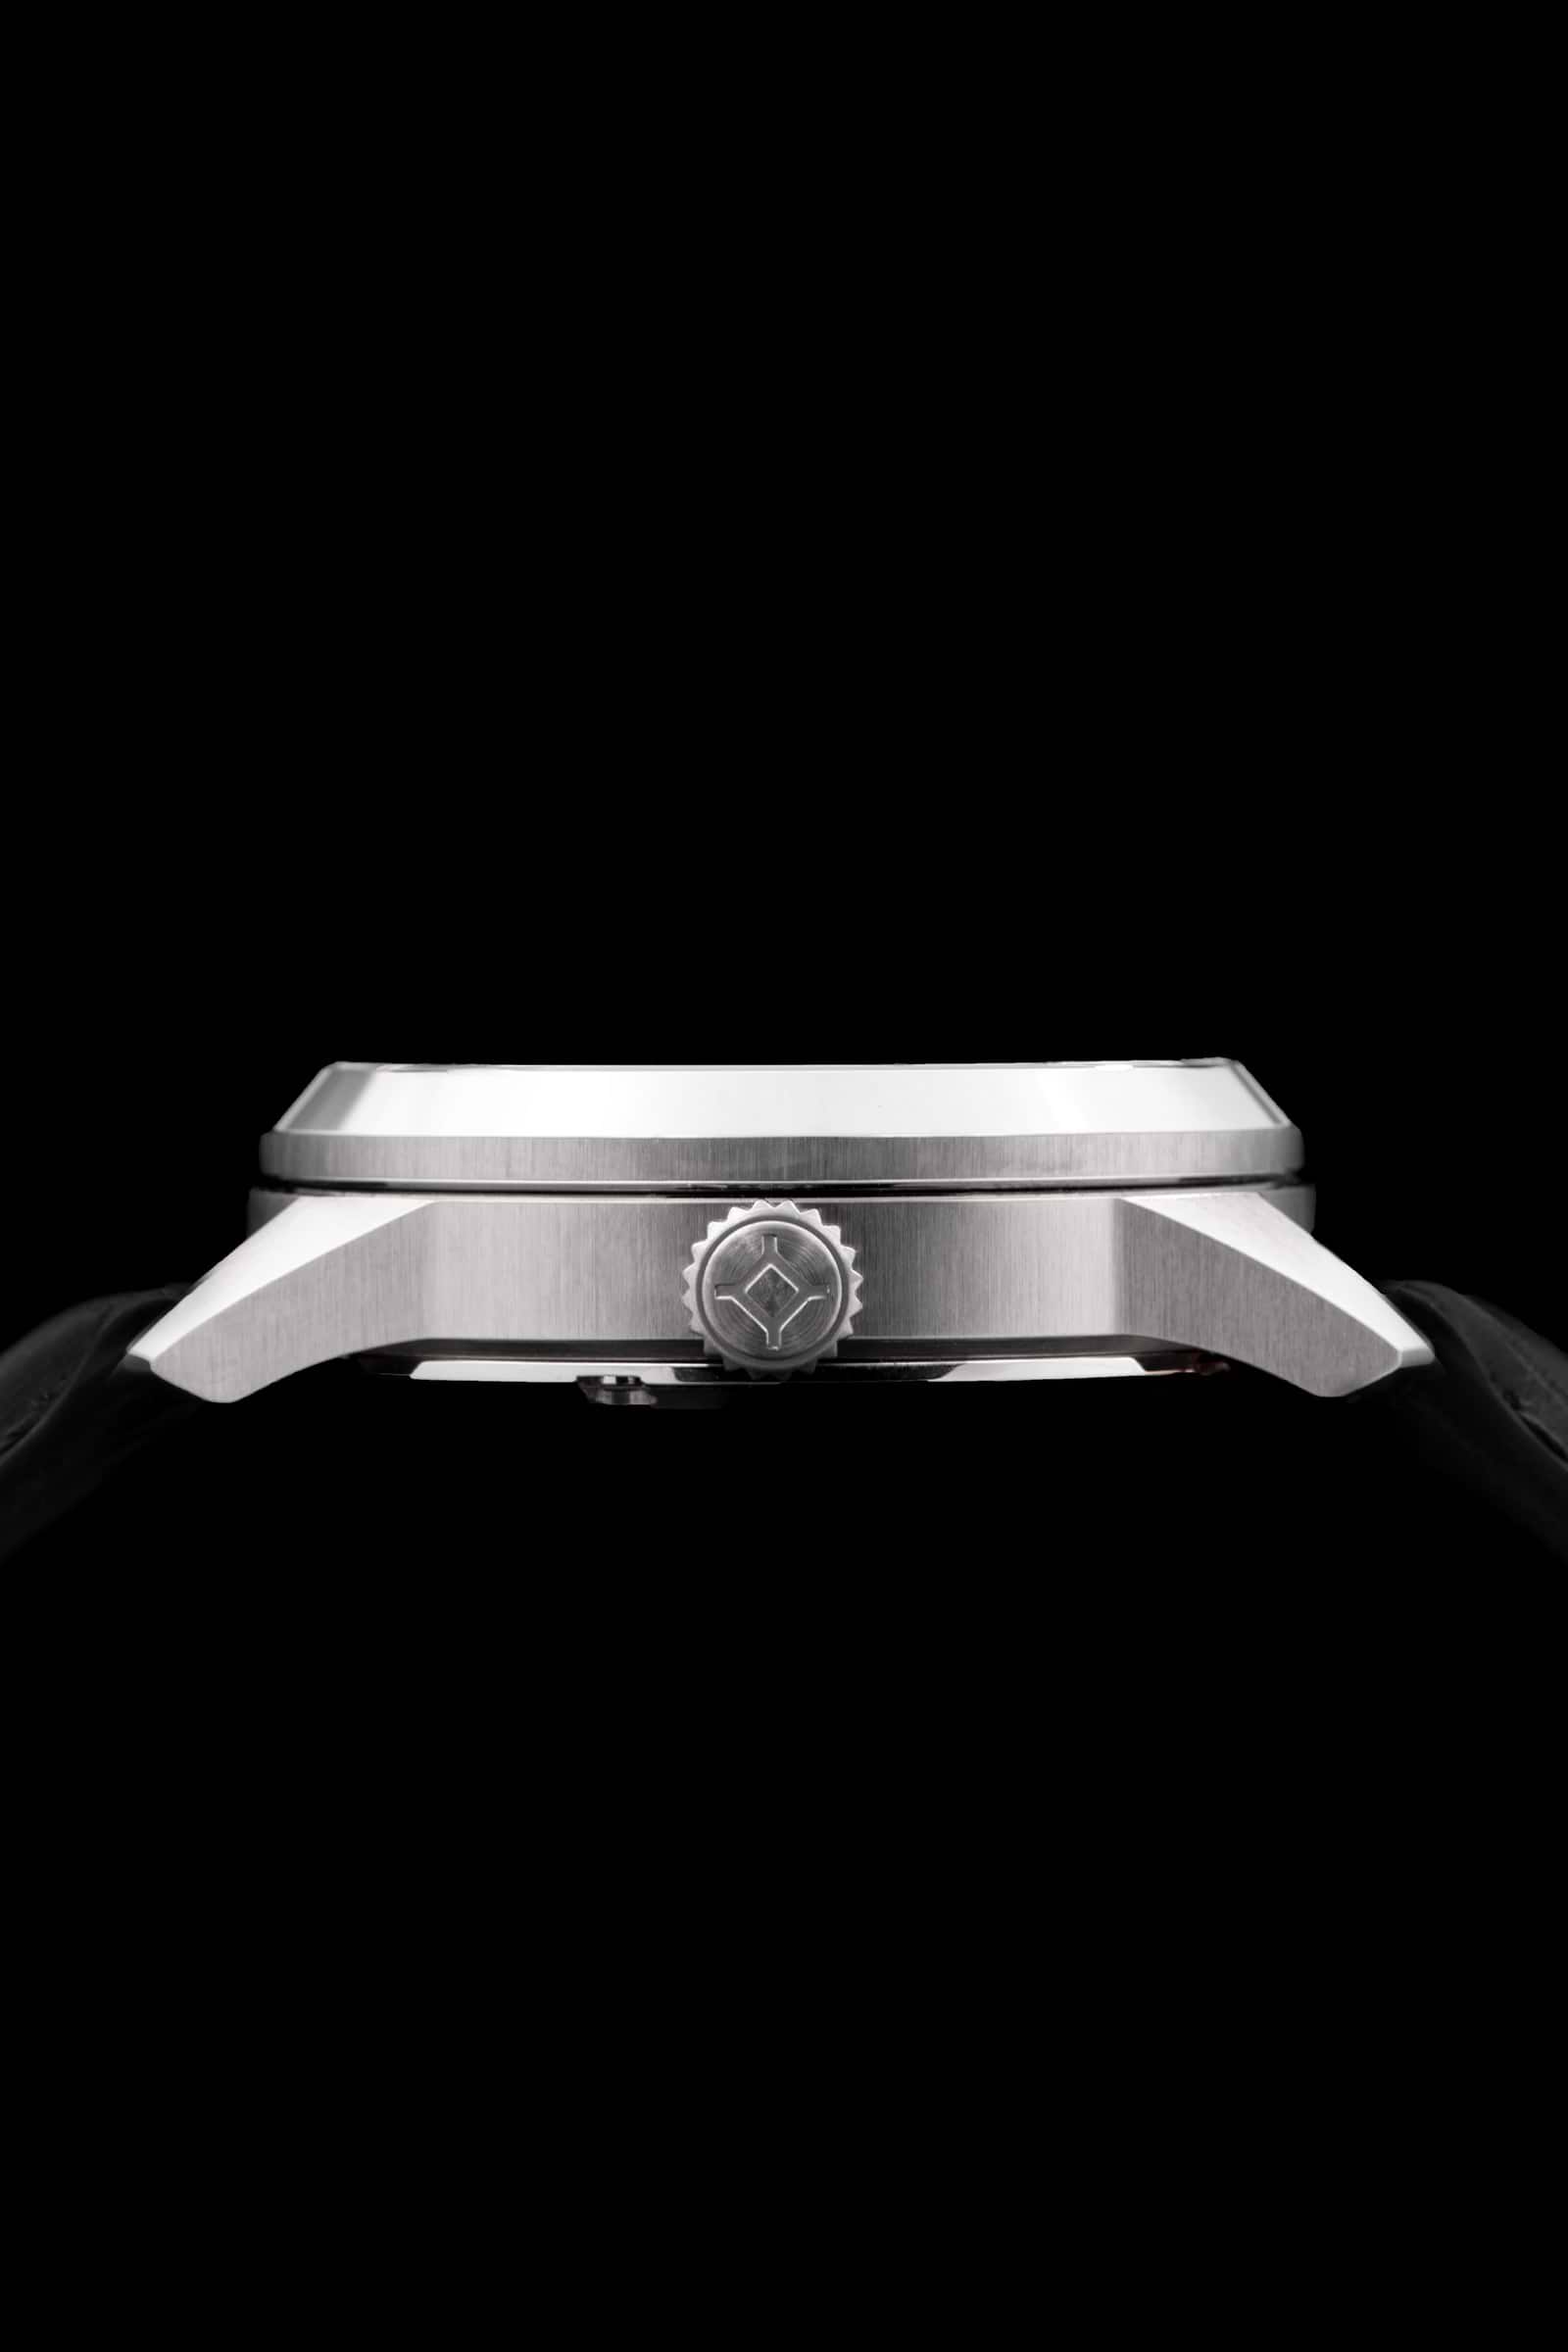 Gros plan sur le côté d'une montre-bracelet voir avec acier inoxydable boîtier, couronne embossée et cuir noir bracelet.